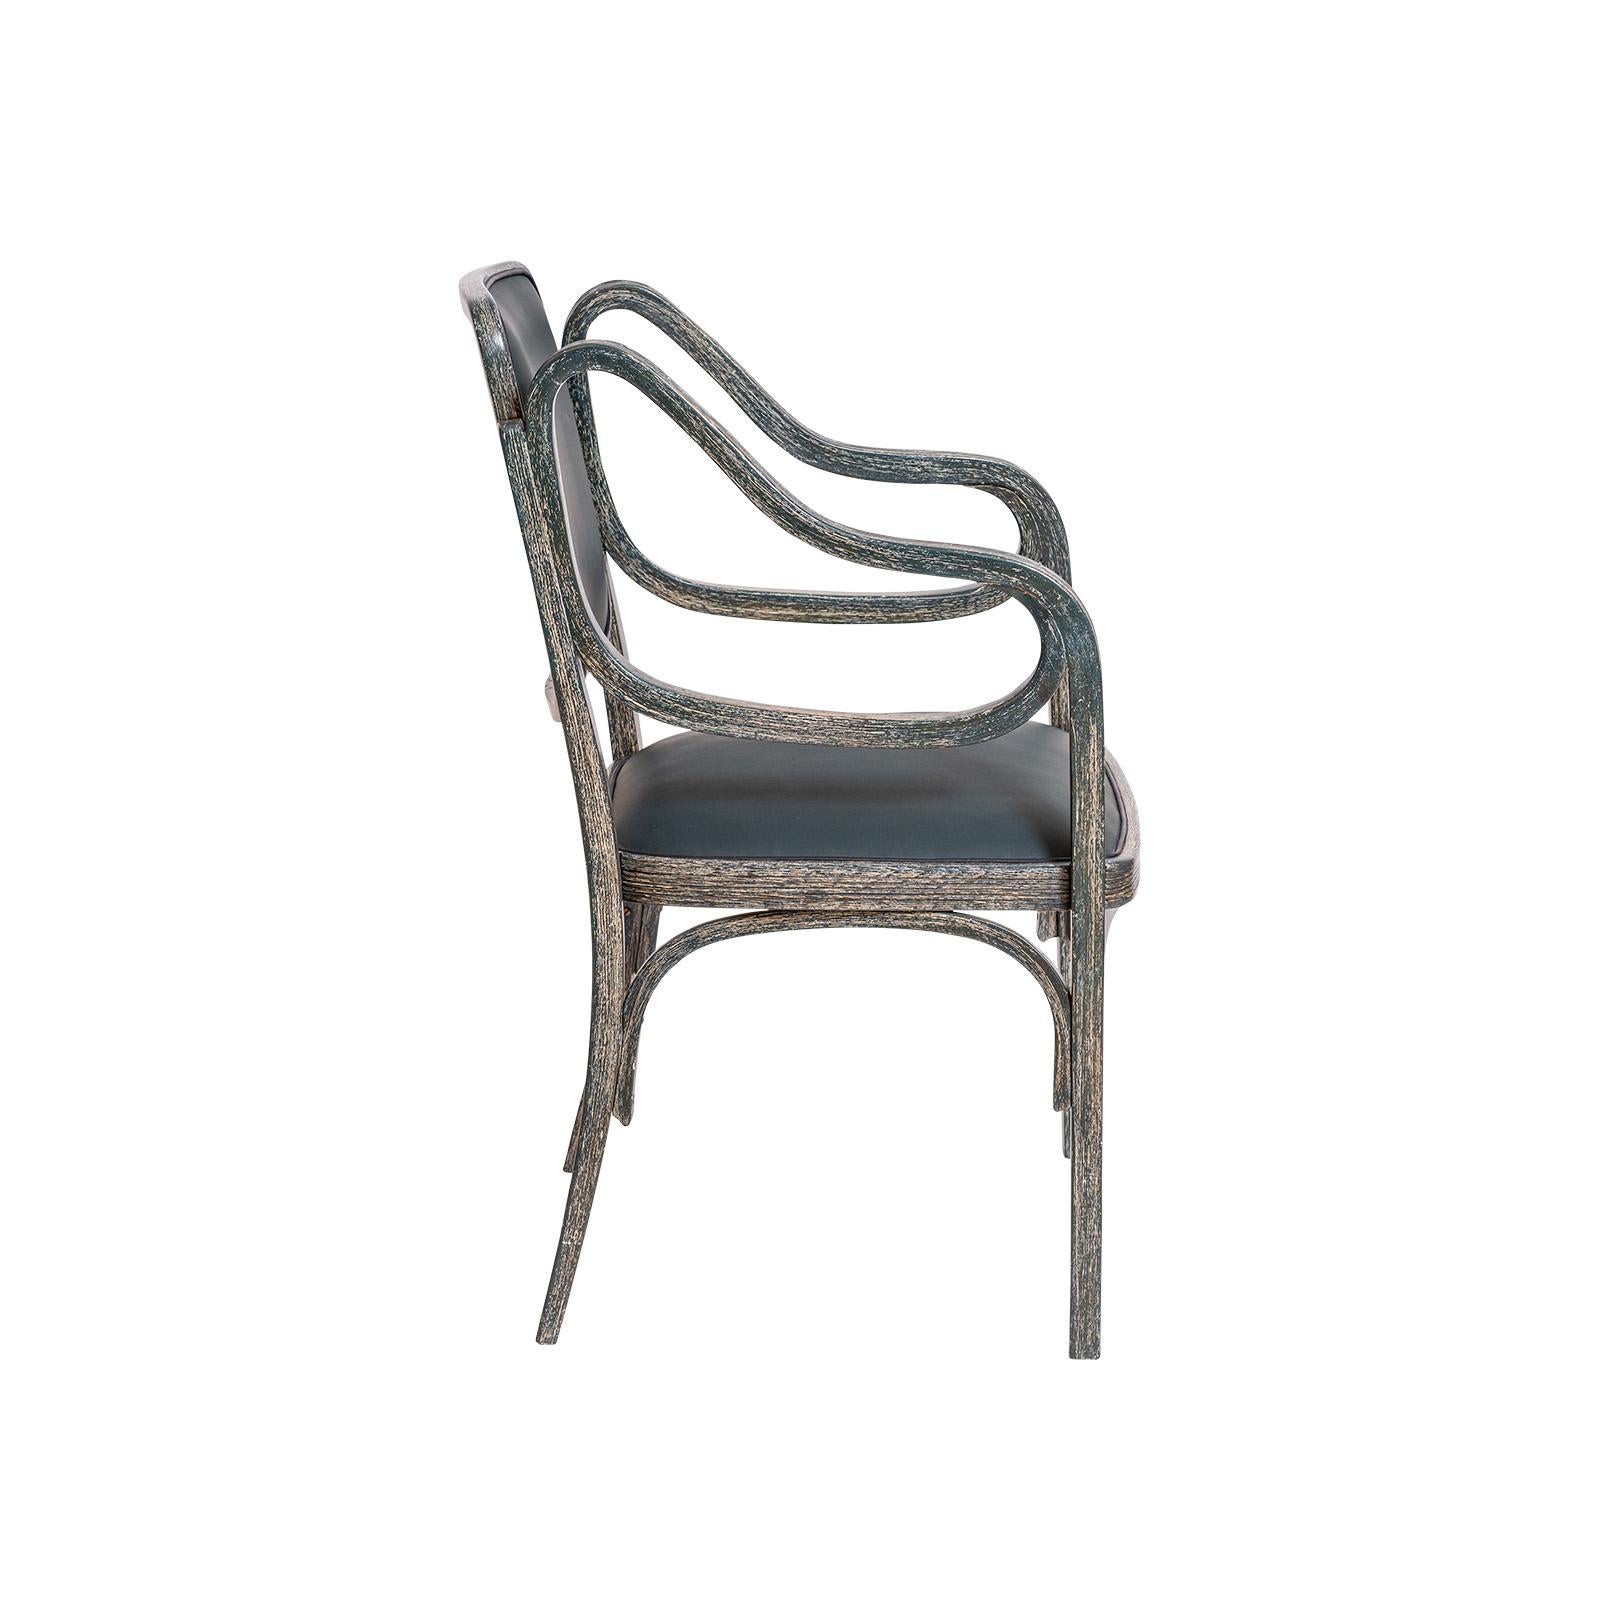 Als Pionier und Meister der Moderne nutzte Otto Wagner die damals recht neue Technik des Holzbiegens für seine Möbelentwürfe.
Der Entwurf für diesen Sessel stammt aus dem Jahr 1901. Dieser Stuhl wurde um 1906 bei Mundus hergestellt. Besonders die